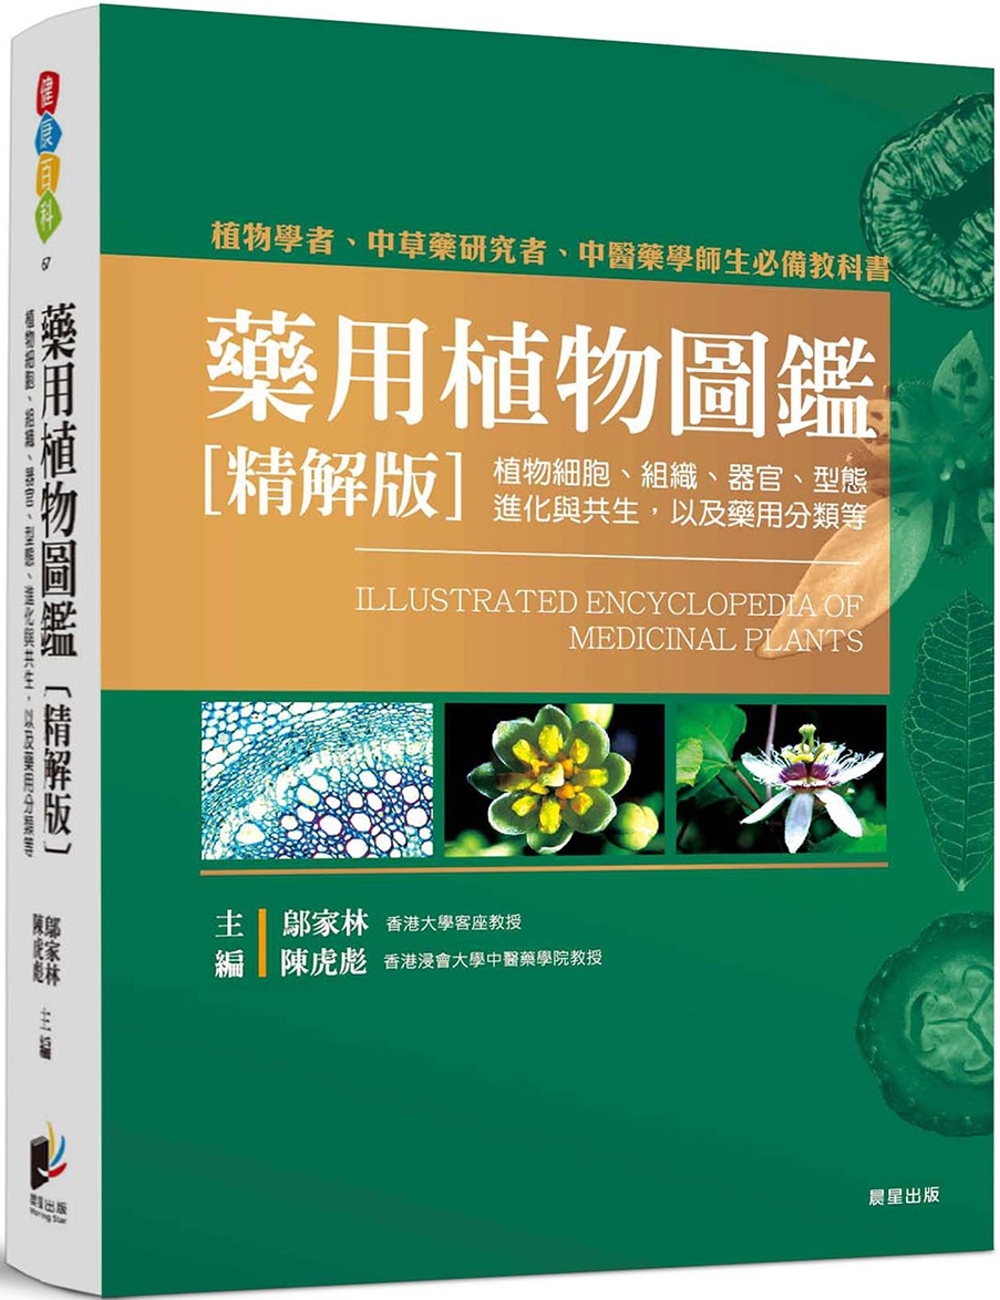 藥用植物圖鑑【精解版】：植物細胞、組織、器官、型態、進化與共生，以及藥用分類等